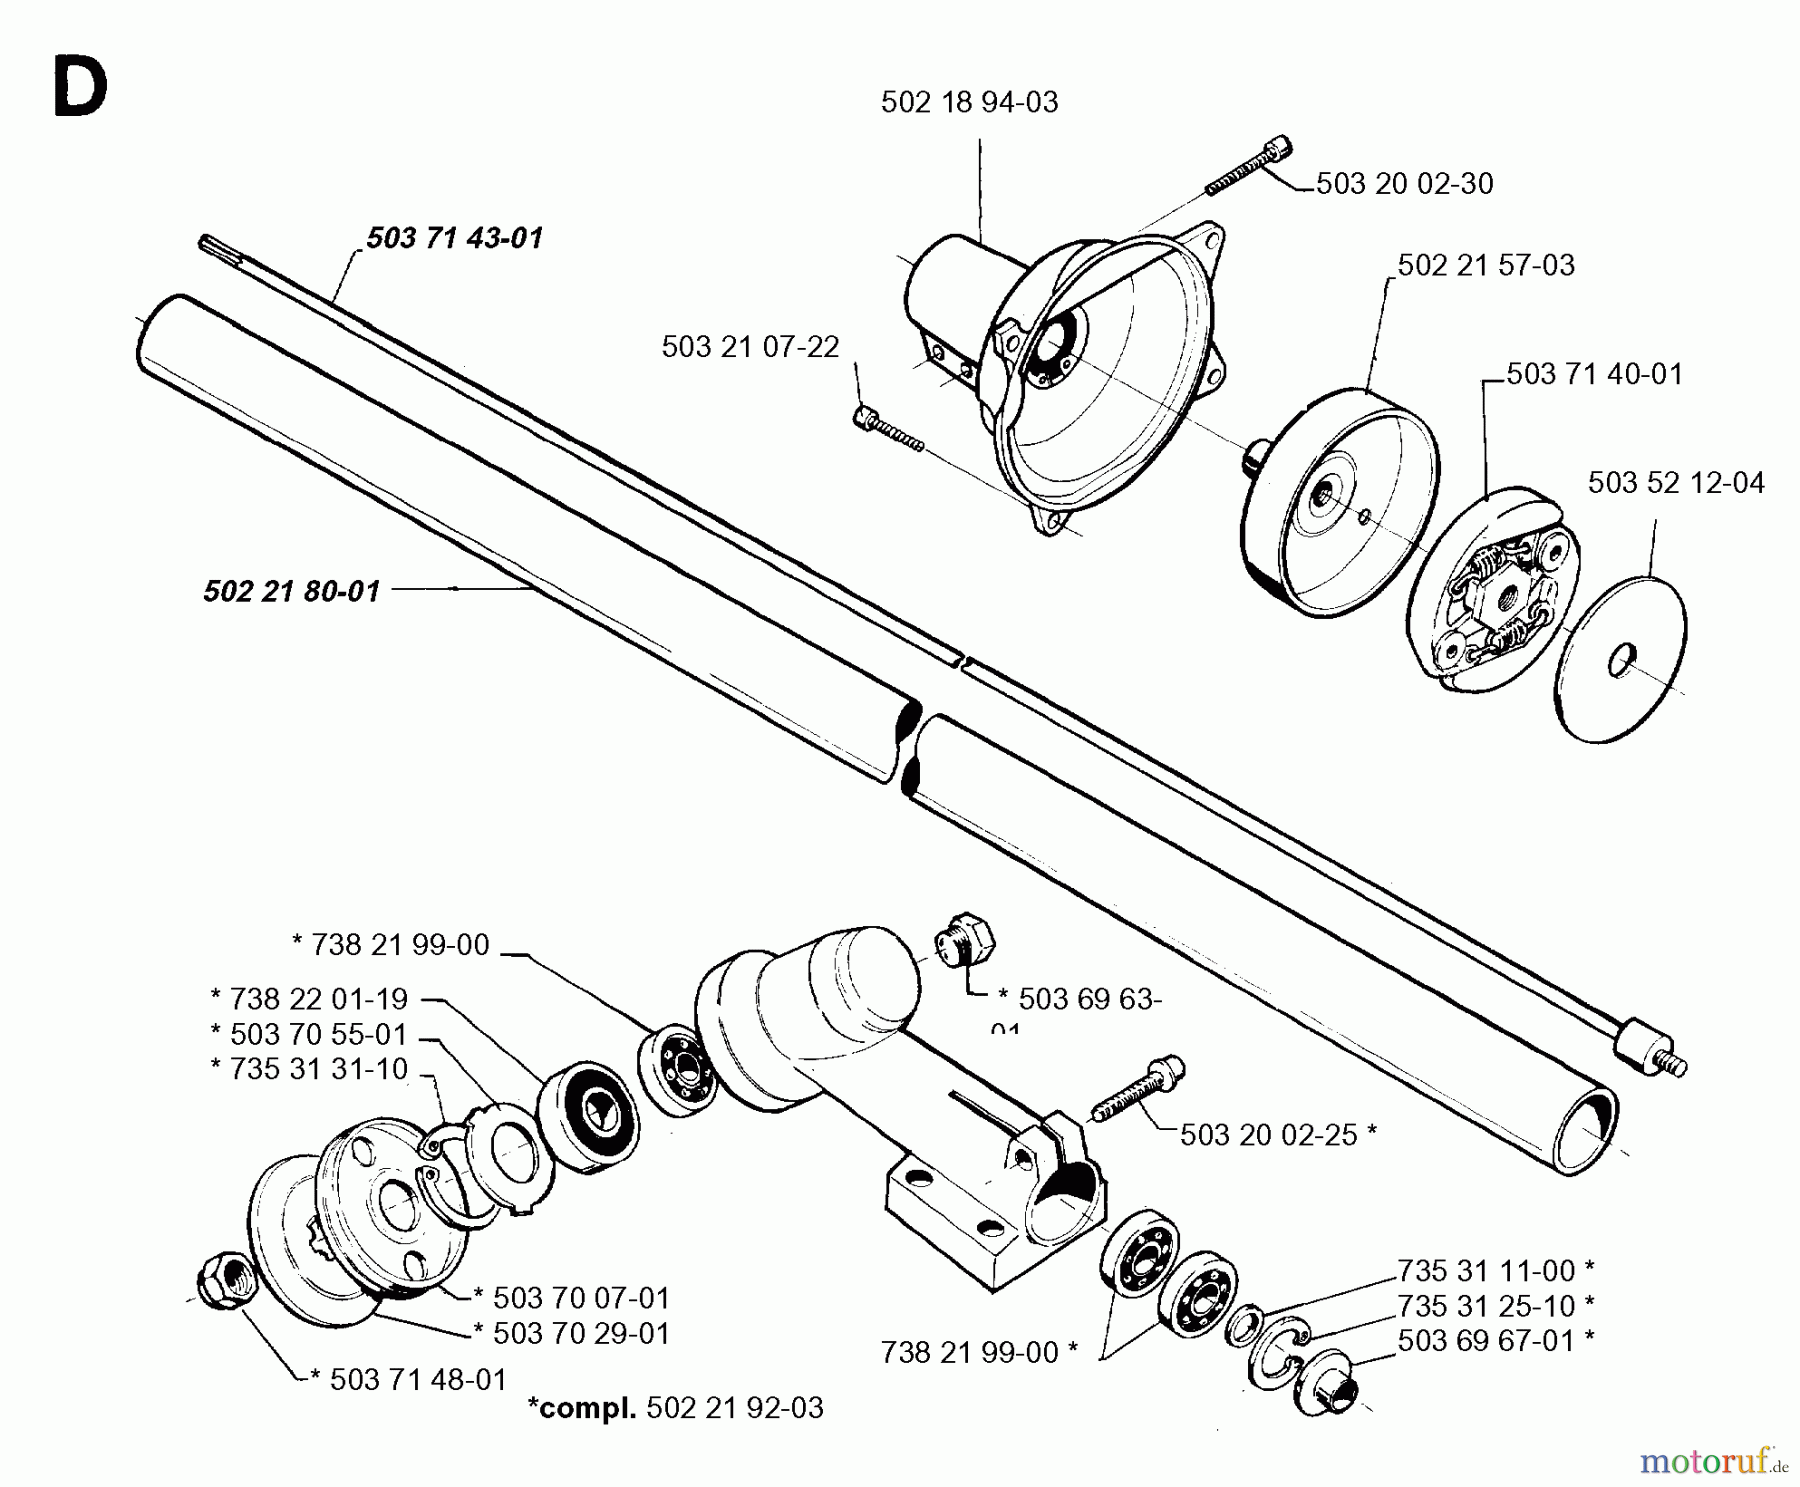  Jonsered Motorsensen, Trimmer GR32 - Jonsered String/Brush Trimmer (1995-01) BEVEL GEAR SHAFT